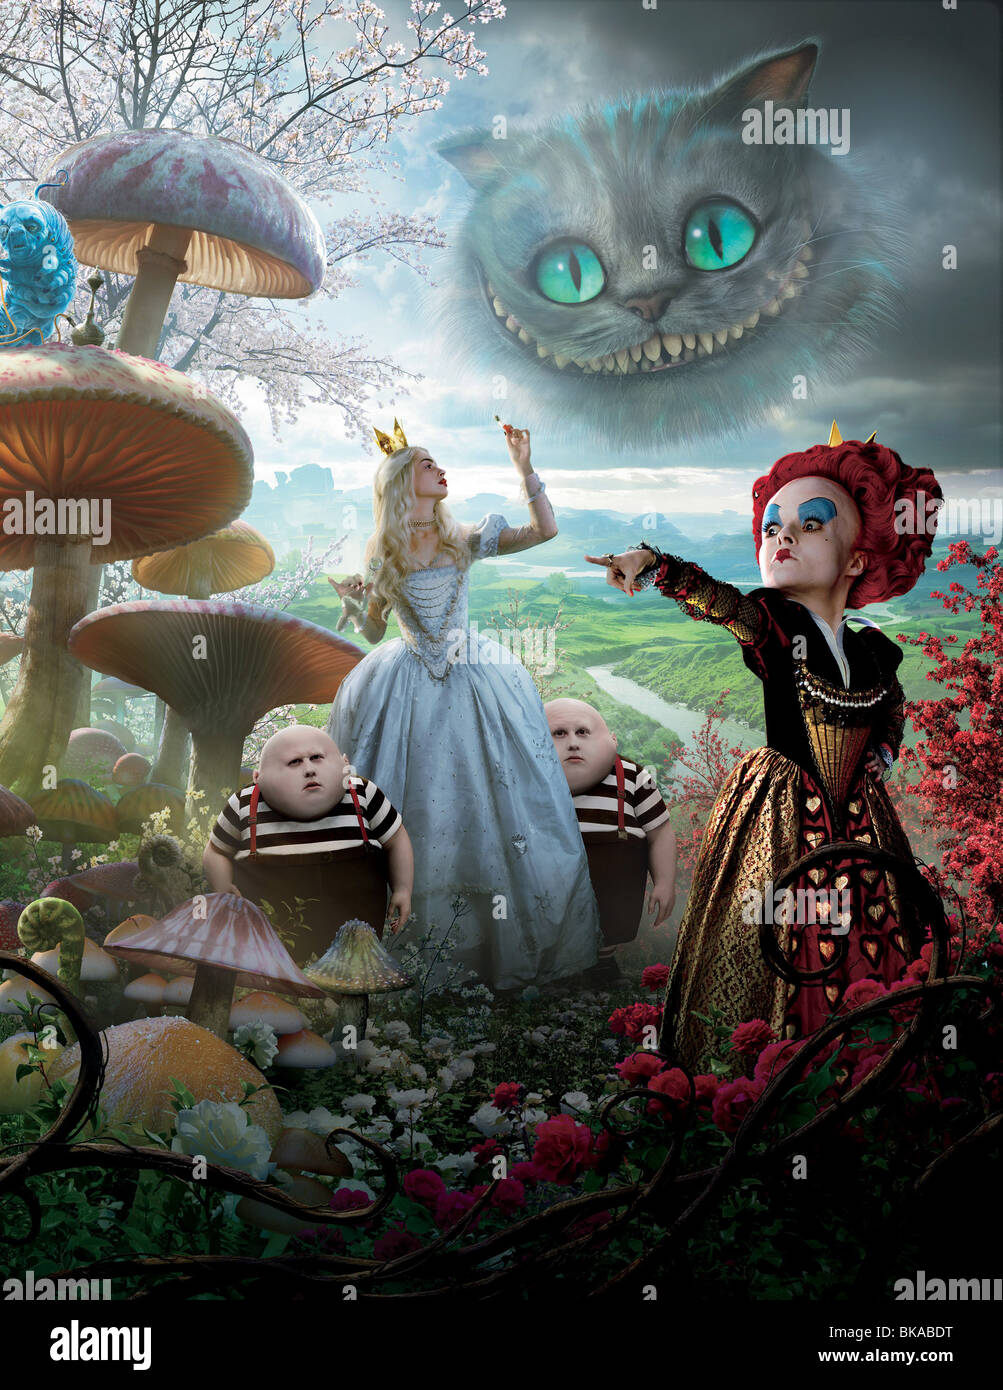 Alice im Wunderland-Jahr: 2010 - USA Regie: Tim Burton Anne Hathaway, Matt  Lucas, Helena Bonham Carter Stockfotografie - Alamy